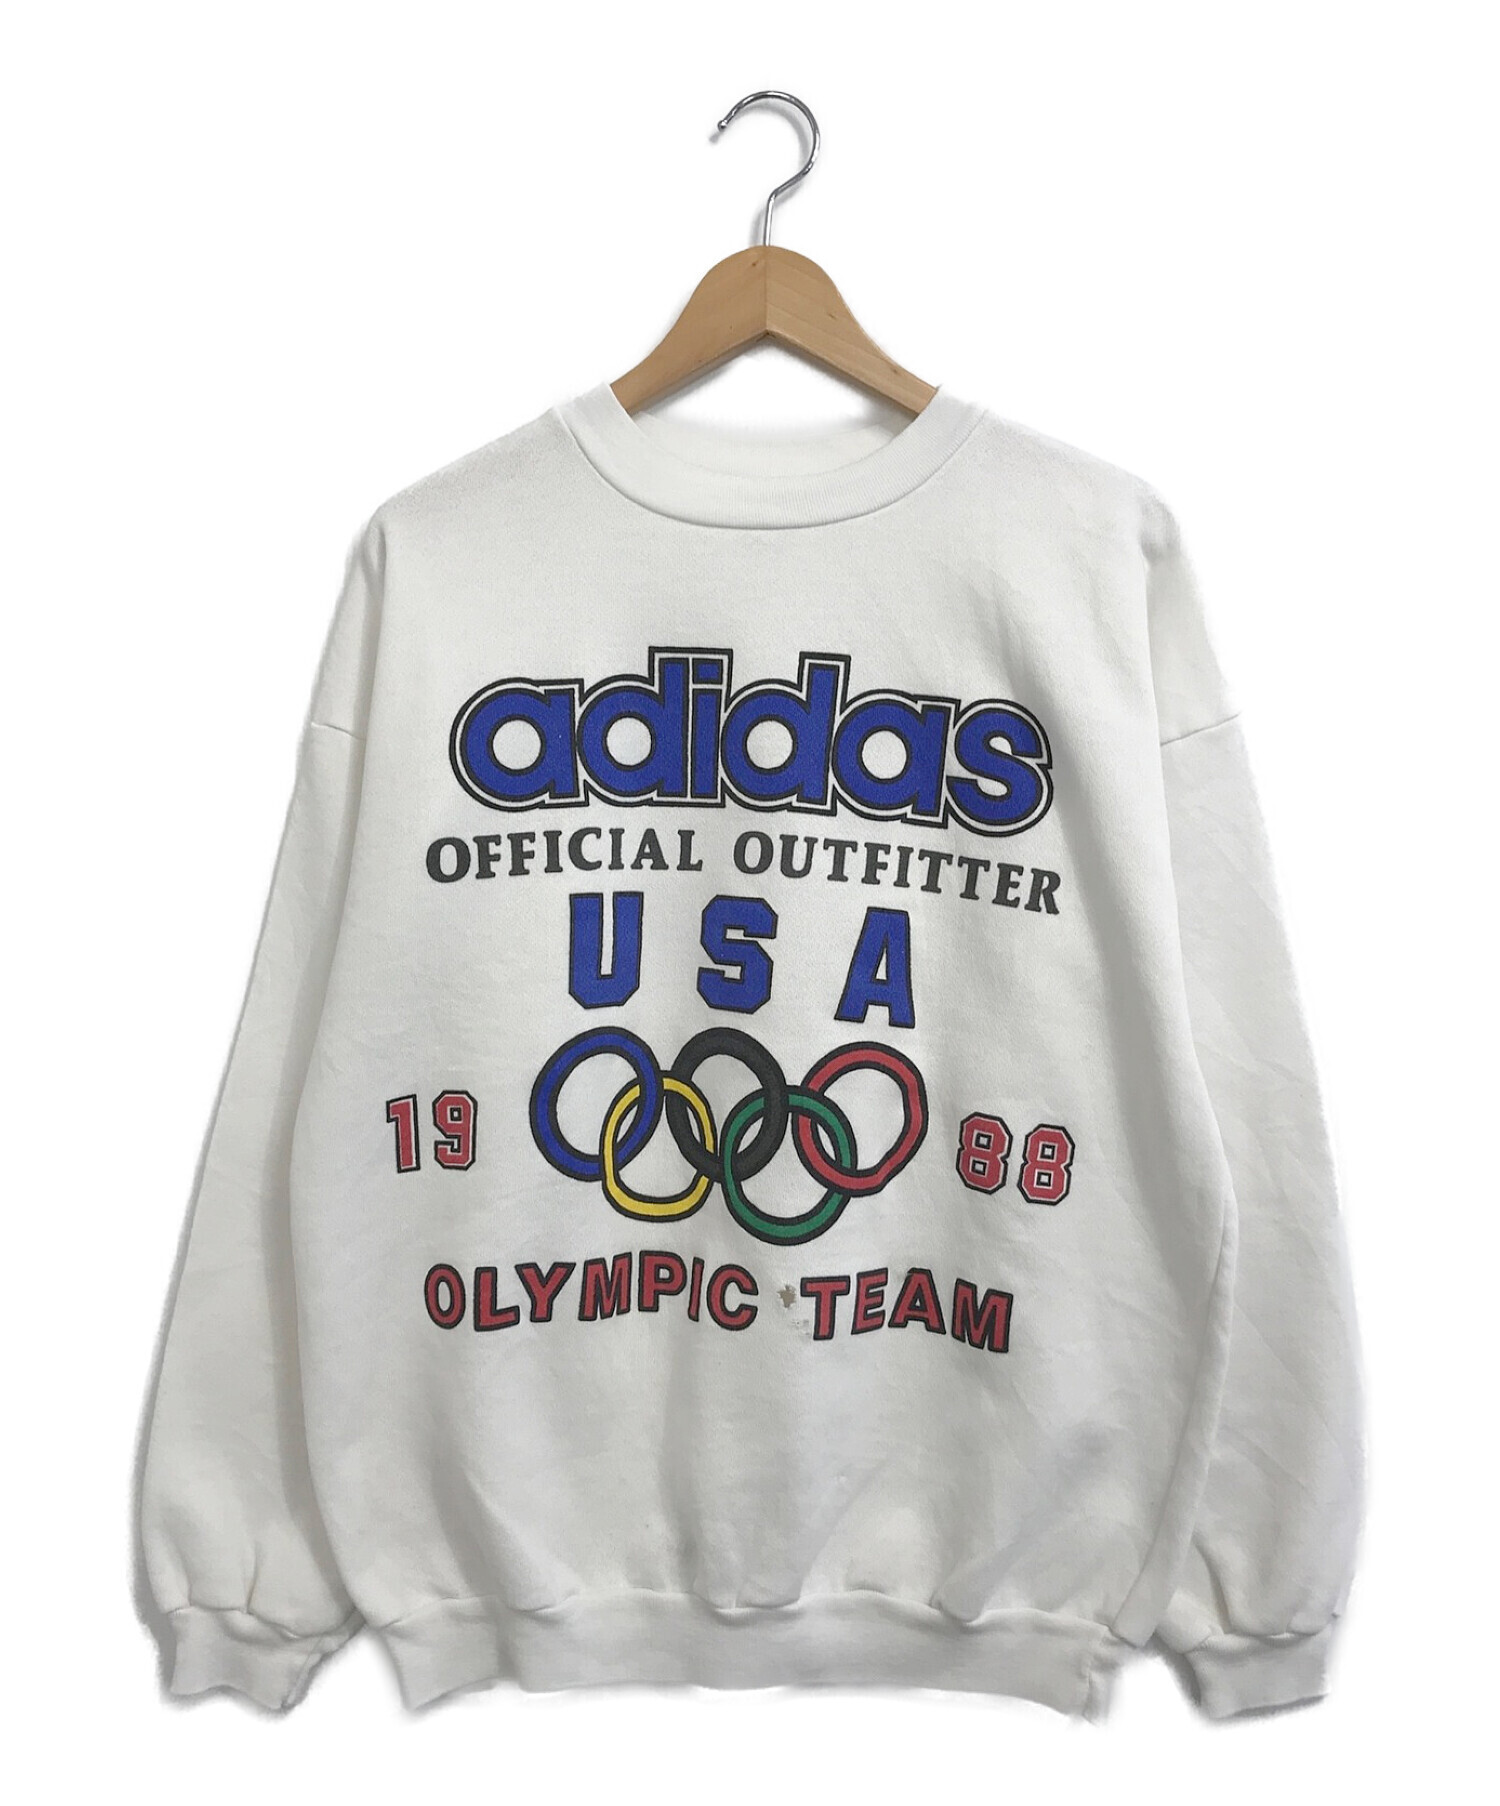 ビンテージ 80年代 オリンピック スウェット 古着 アディダス adidas